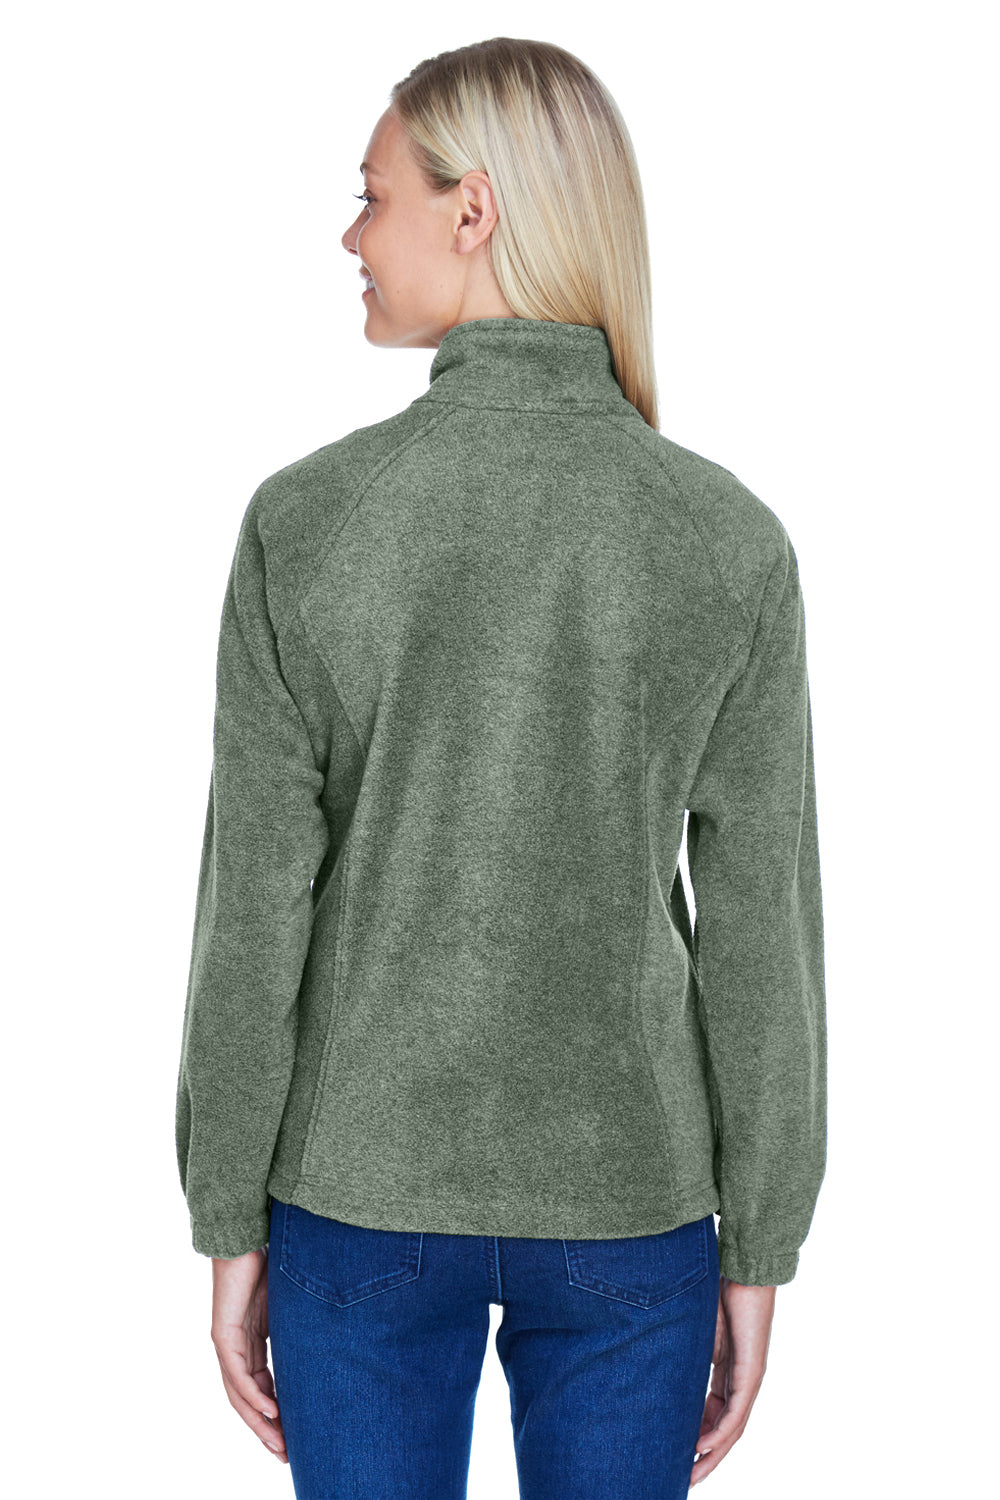 Harriton M990W Womens Full Zip Fleece Jacket Dill Green Back